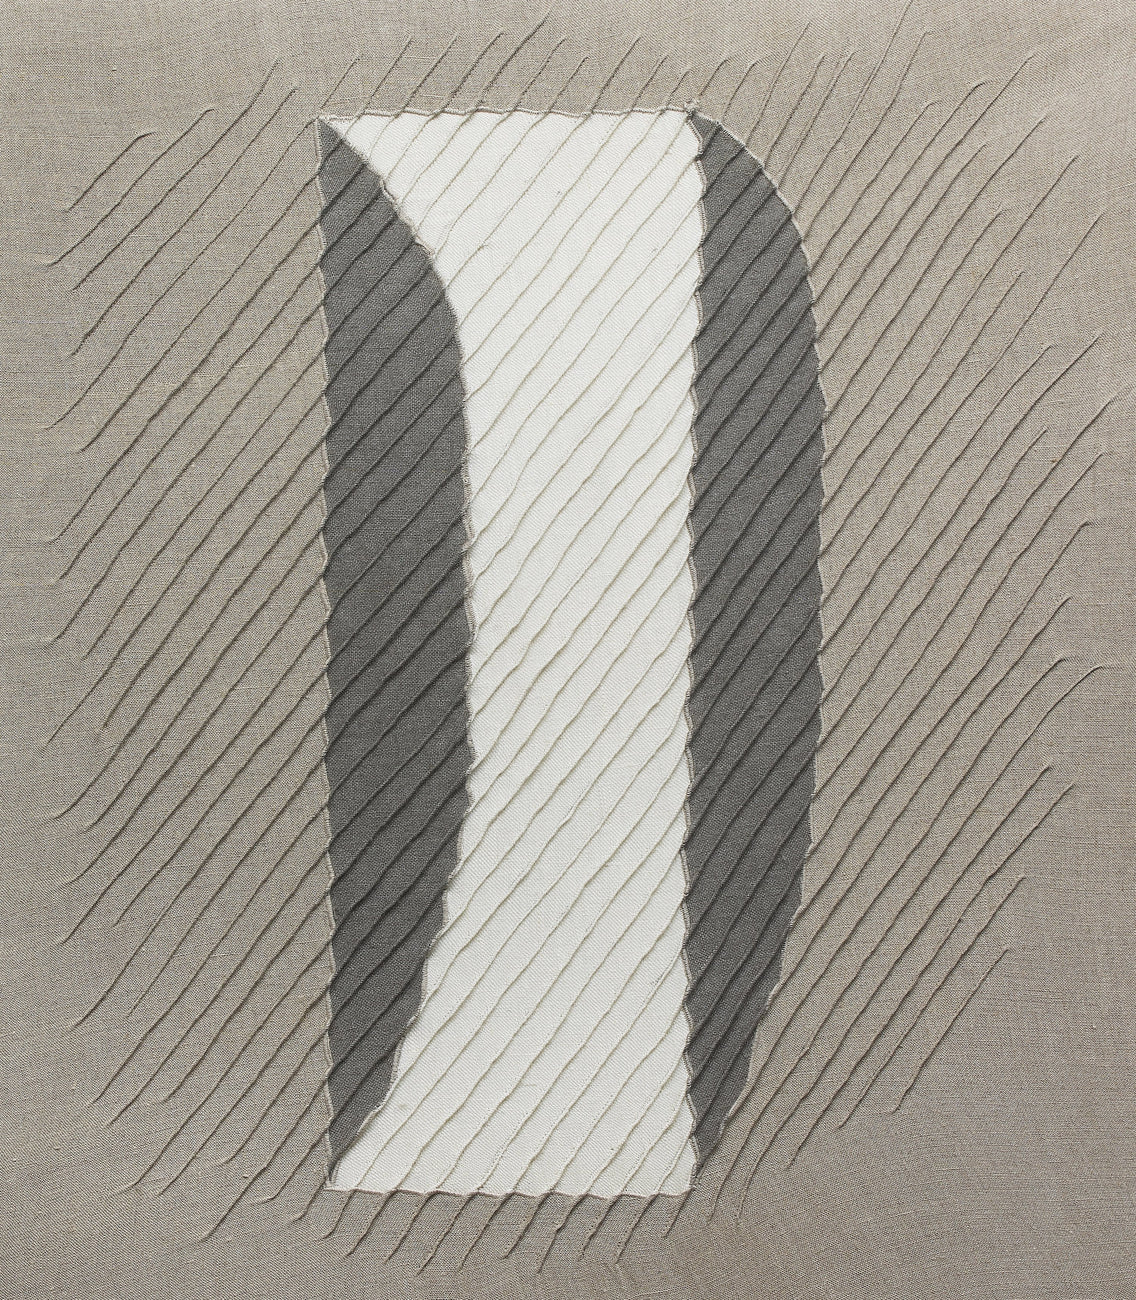 Untitled 170373, TSUYOSHI MAEKAWA, 1982Panel, Linen, Stitching, Acrylic53.0 × 45.5cm